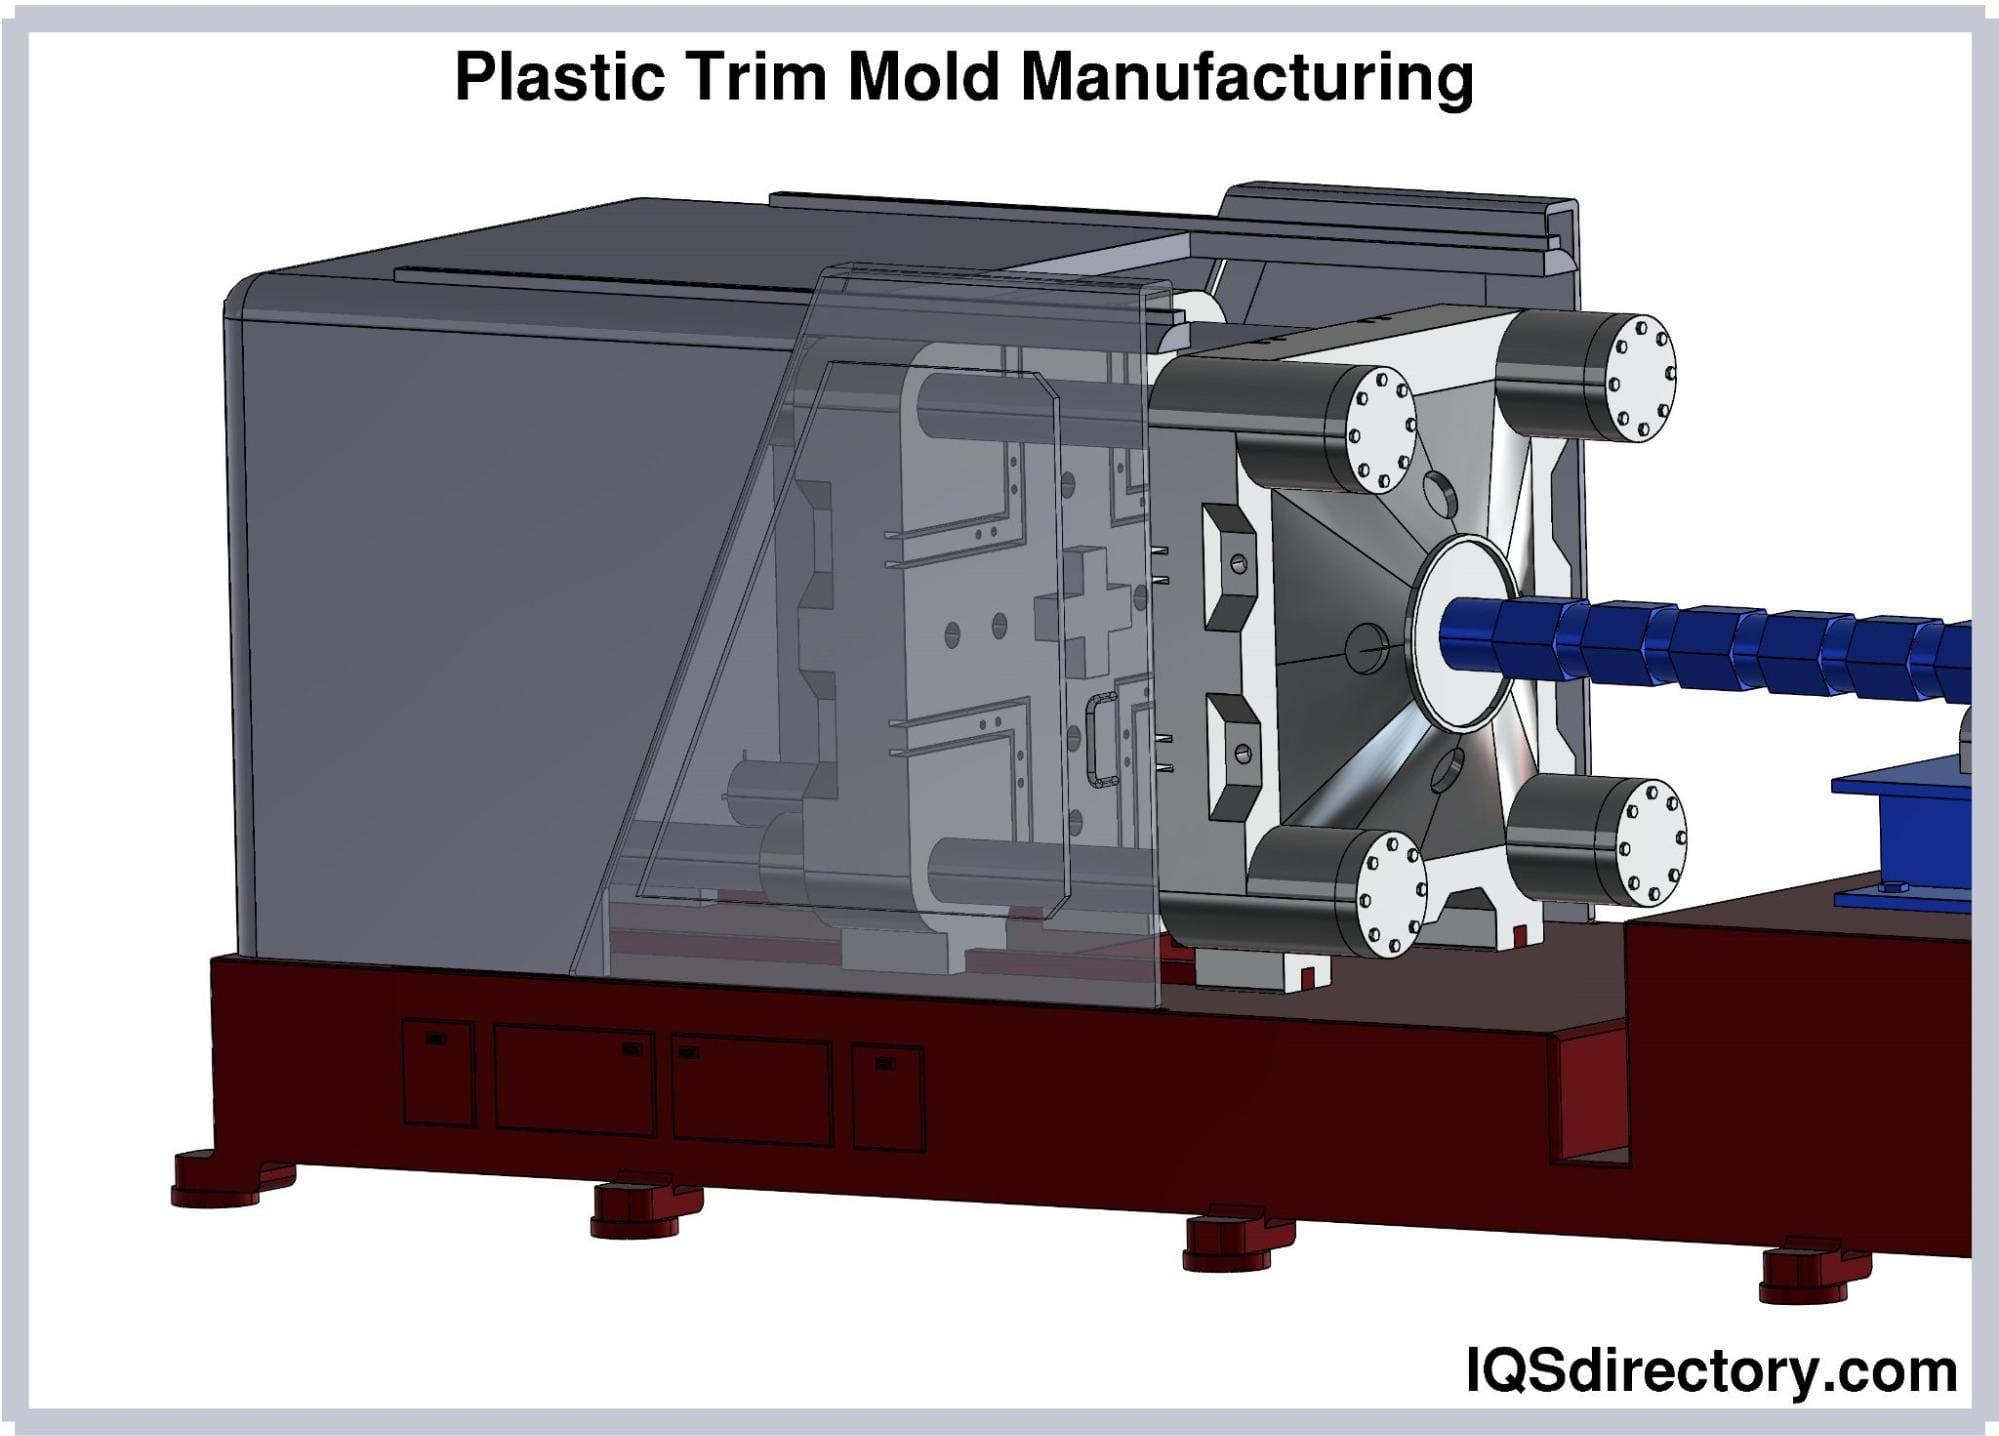 Plastic Trim Mold Manufacturing